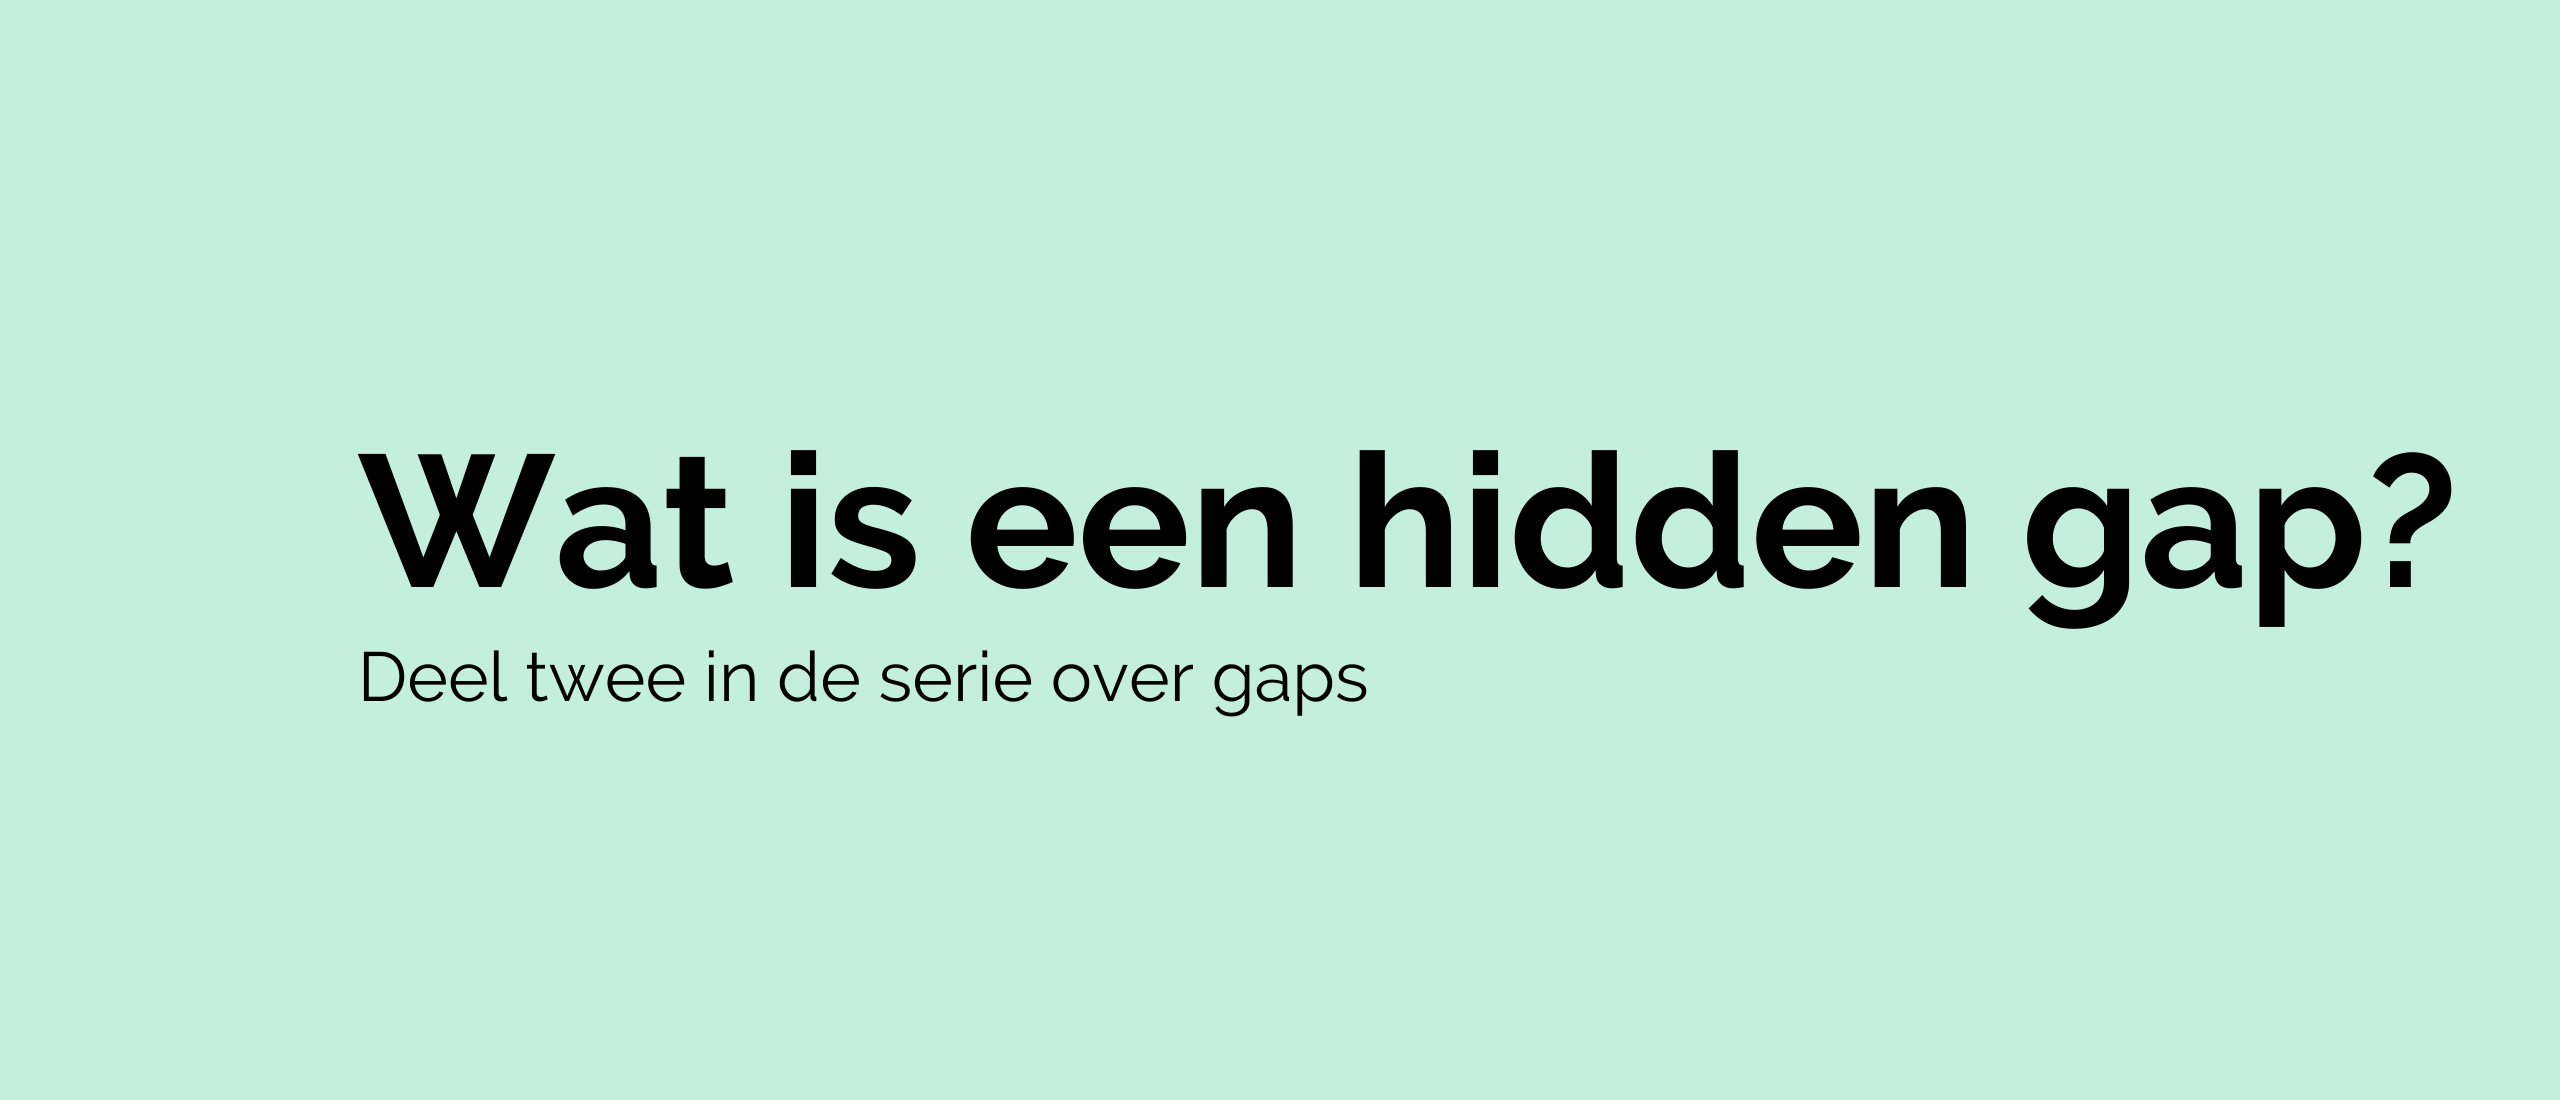 Wat is een hidden gap?